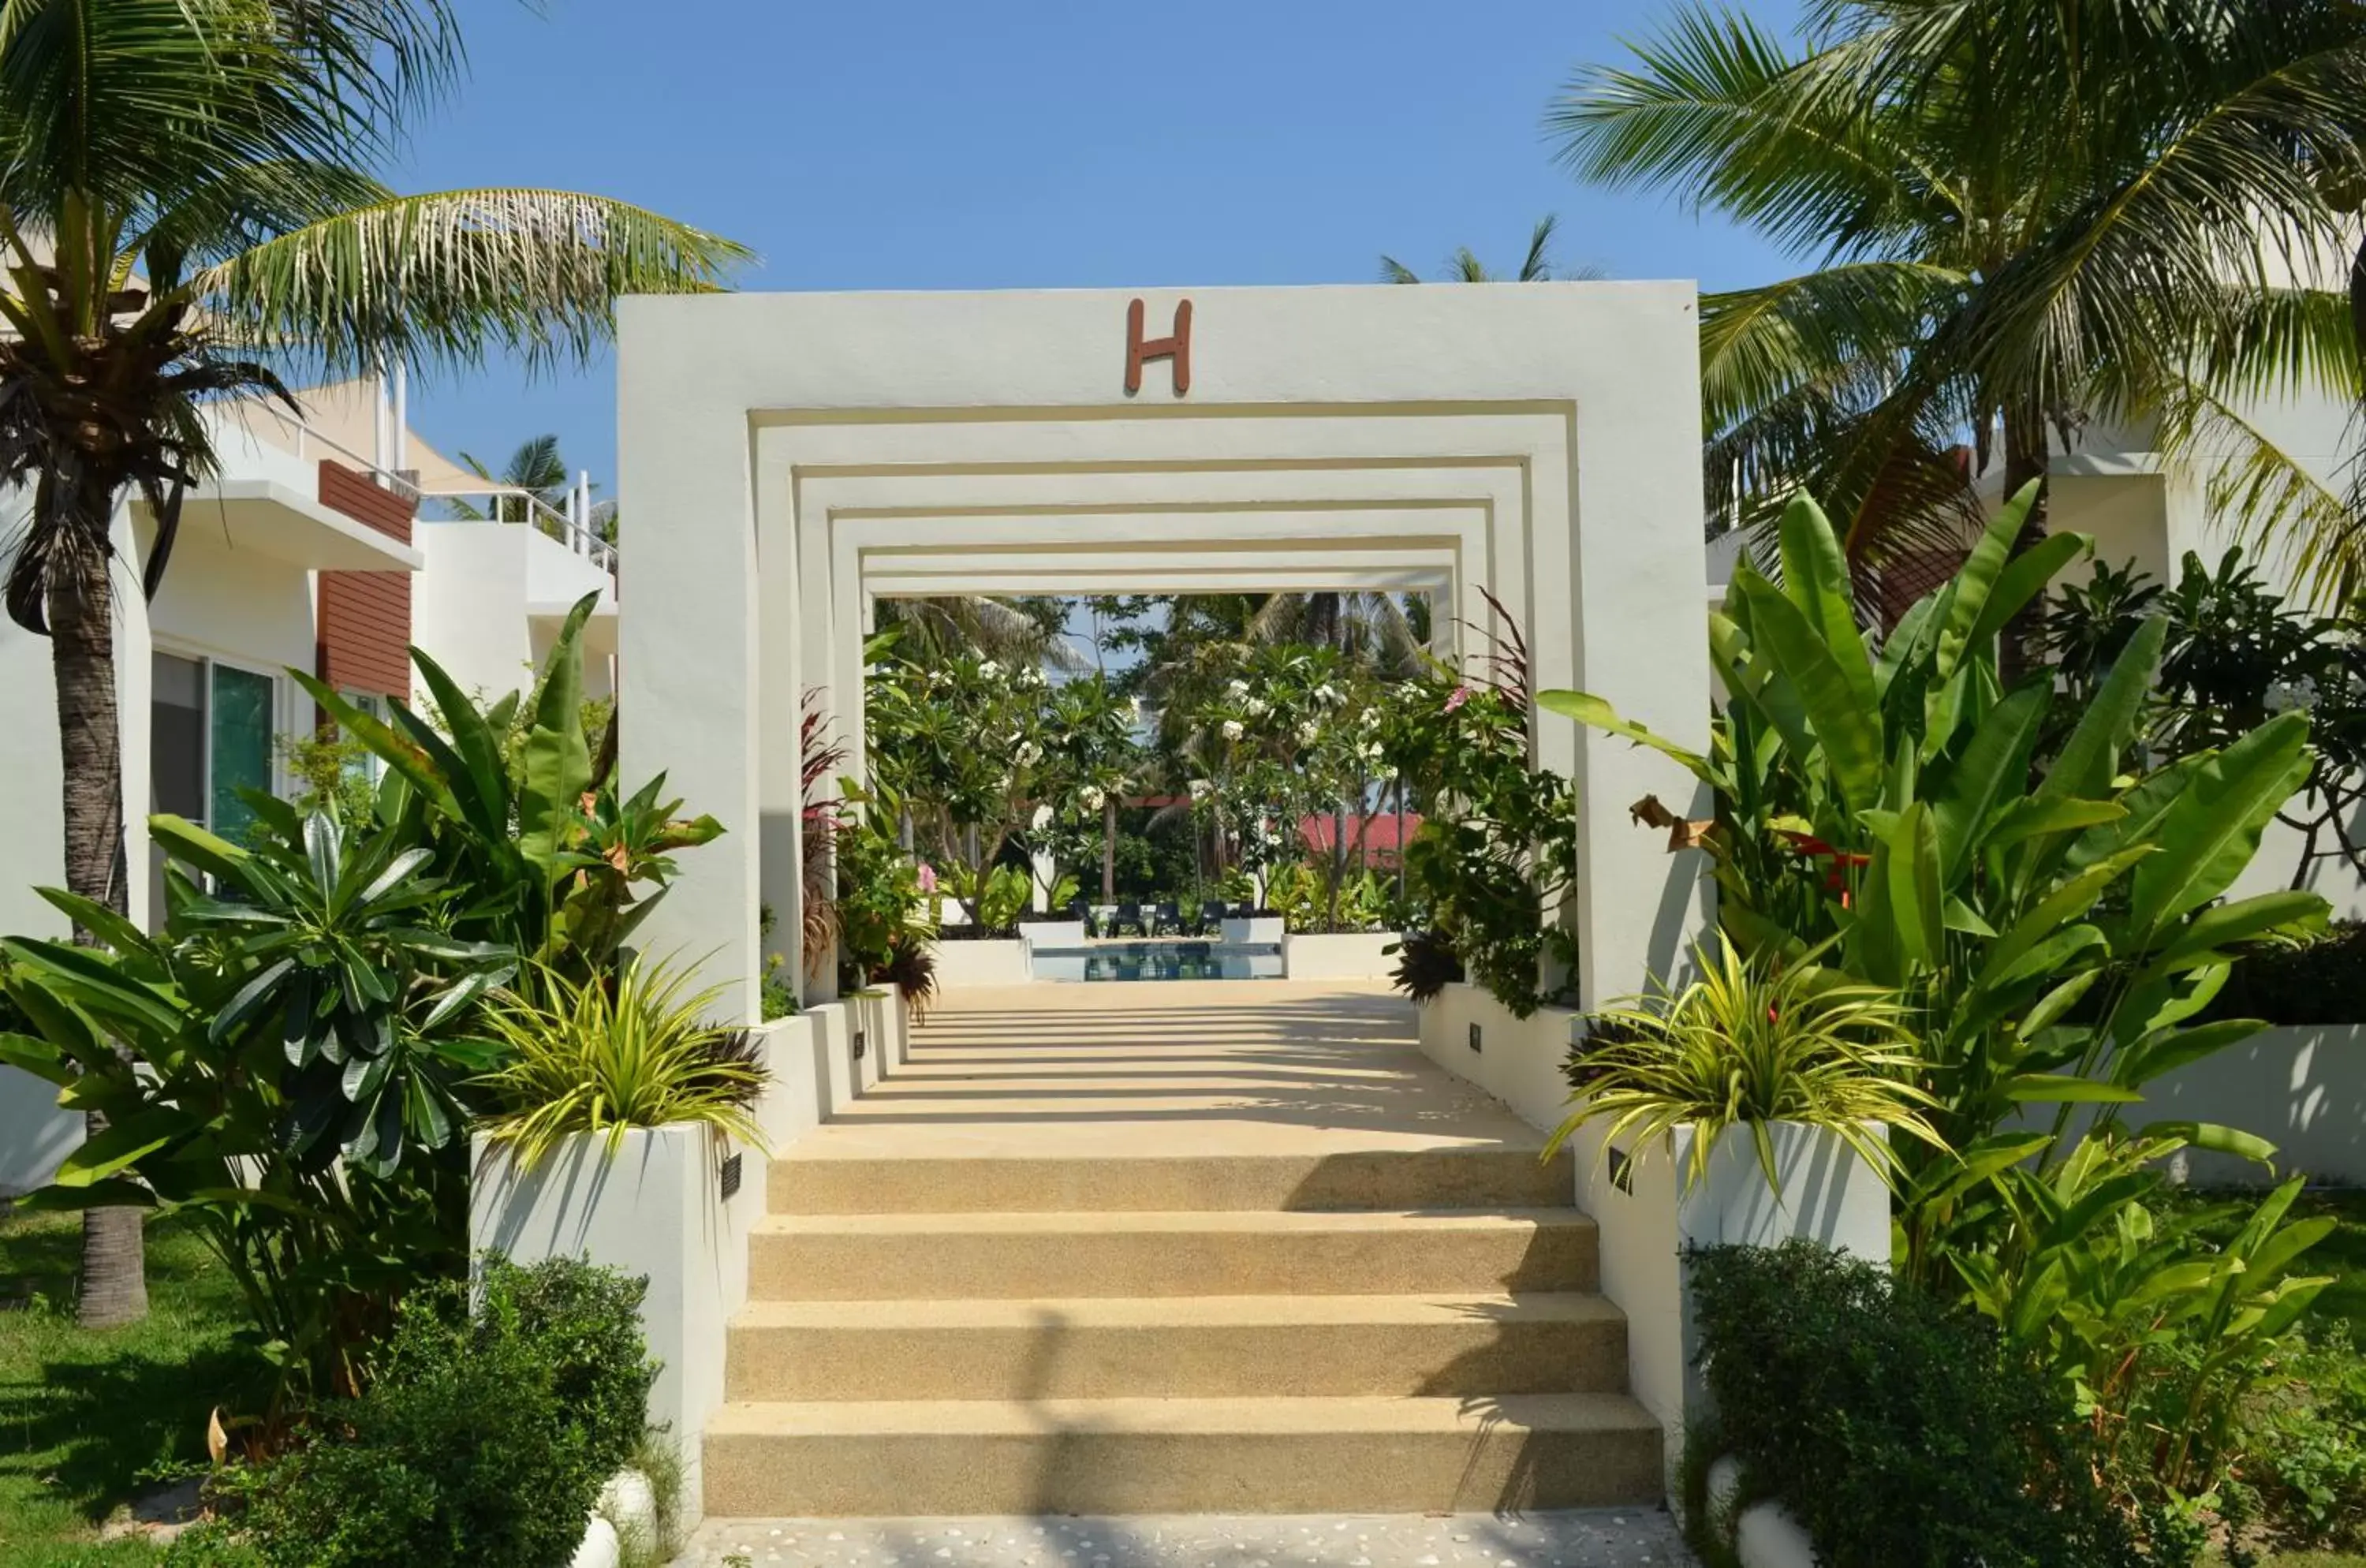 Facade/entrance in The Beach Village Resort